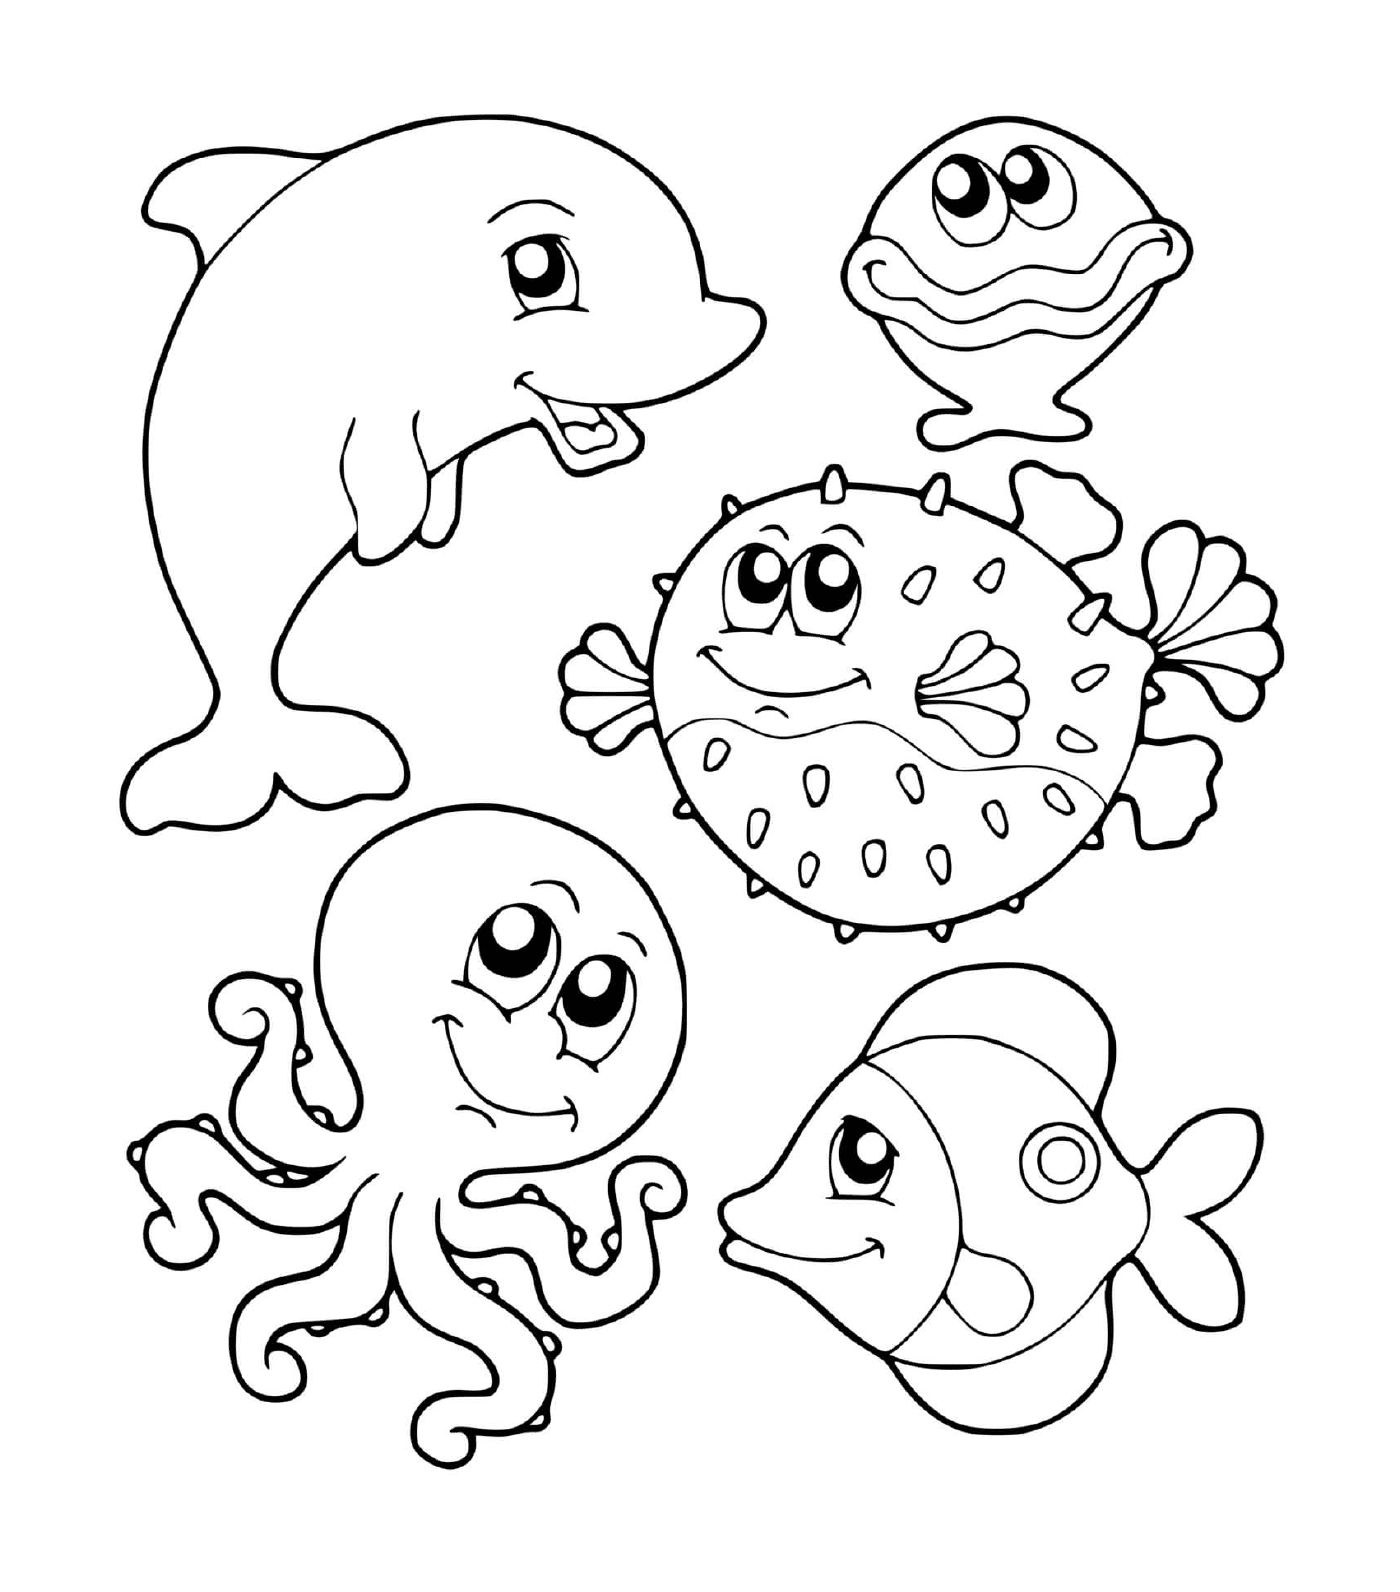  Gruppo di animali marini nell'acqua 